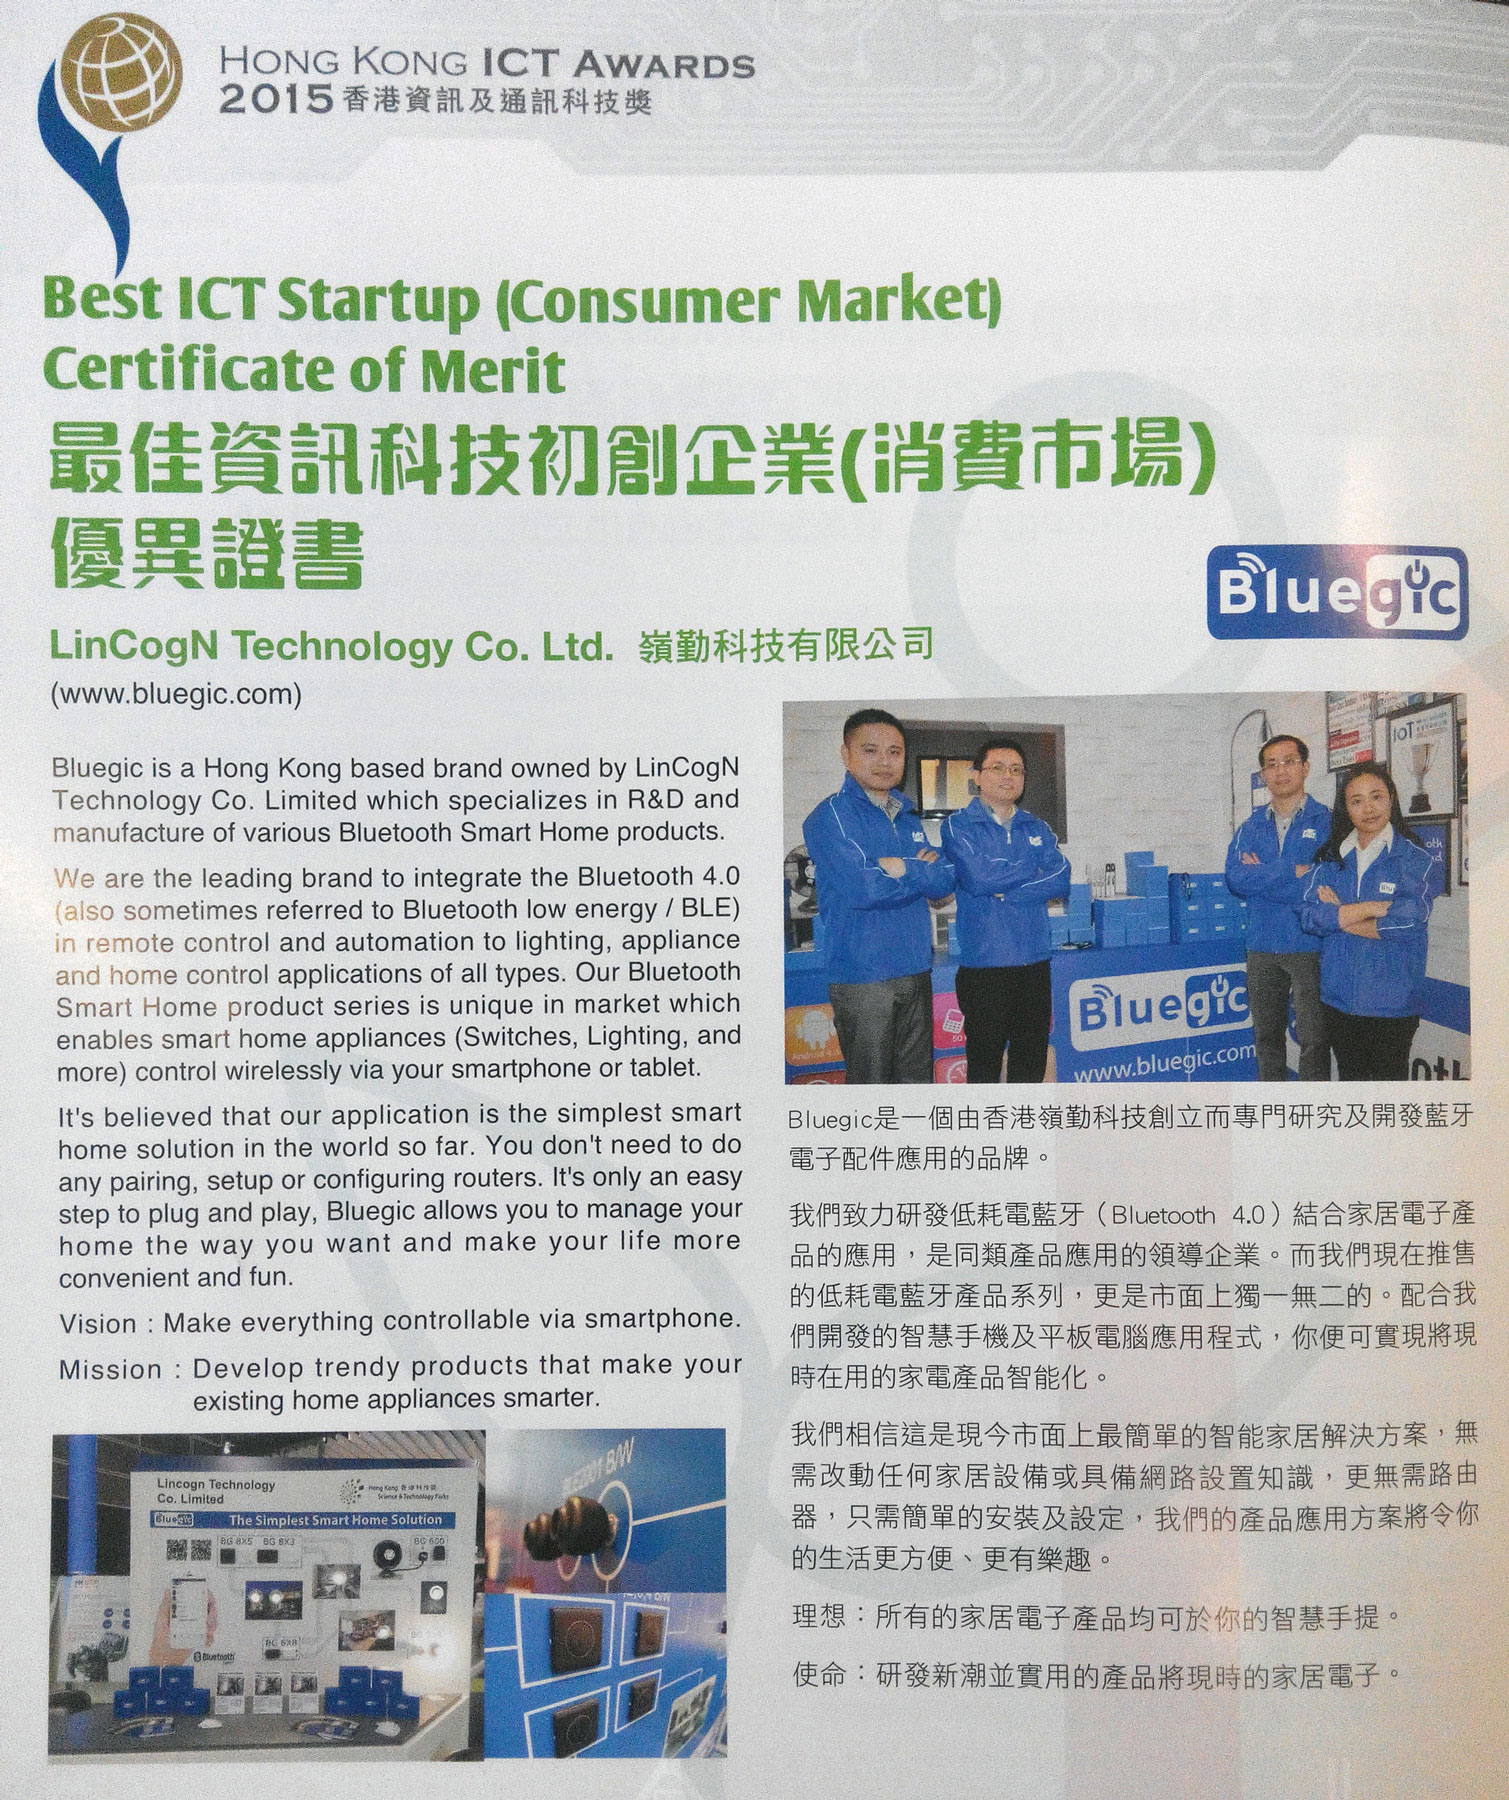 Blogs - 2015040101 - HK ICT AWARDS 2015 - Cert. of Merit